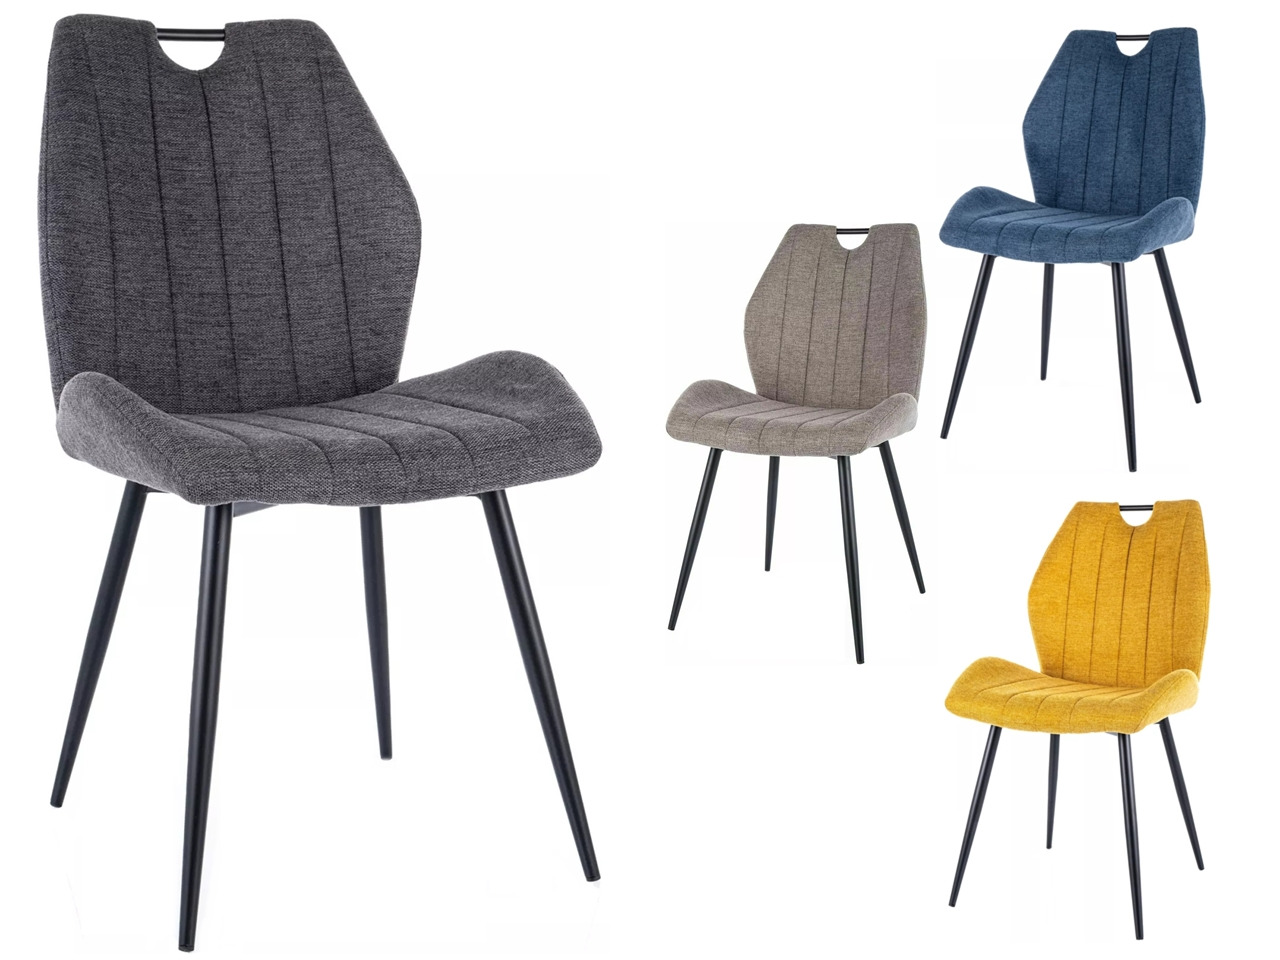 SIG-Arco Brego modern fémvázas szék